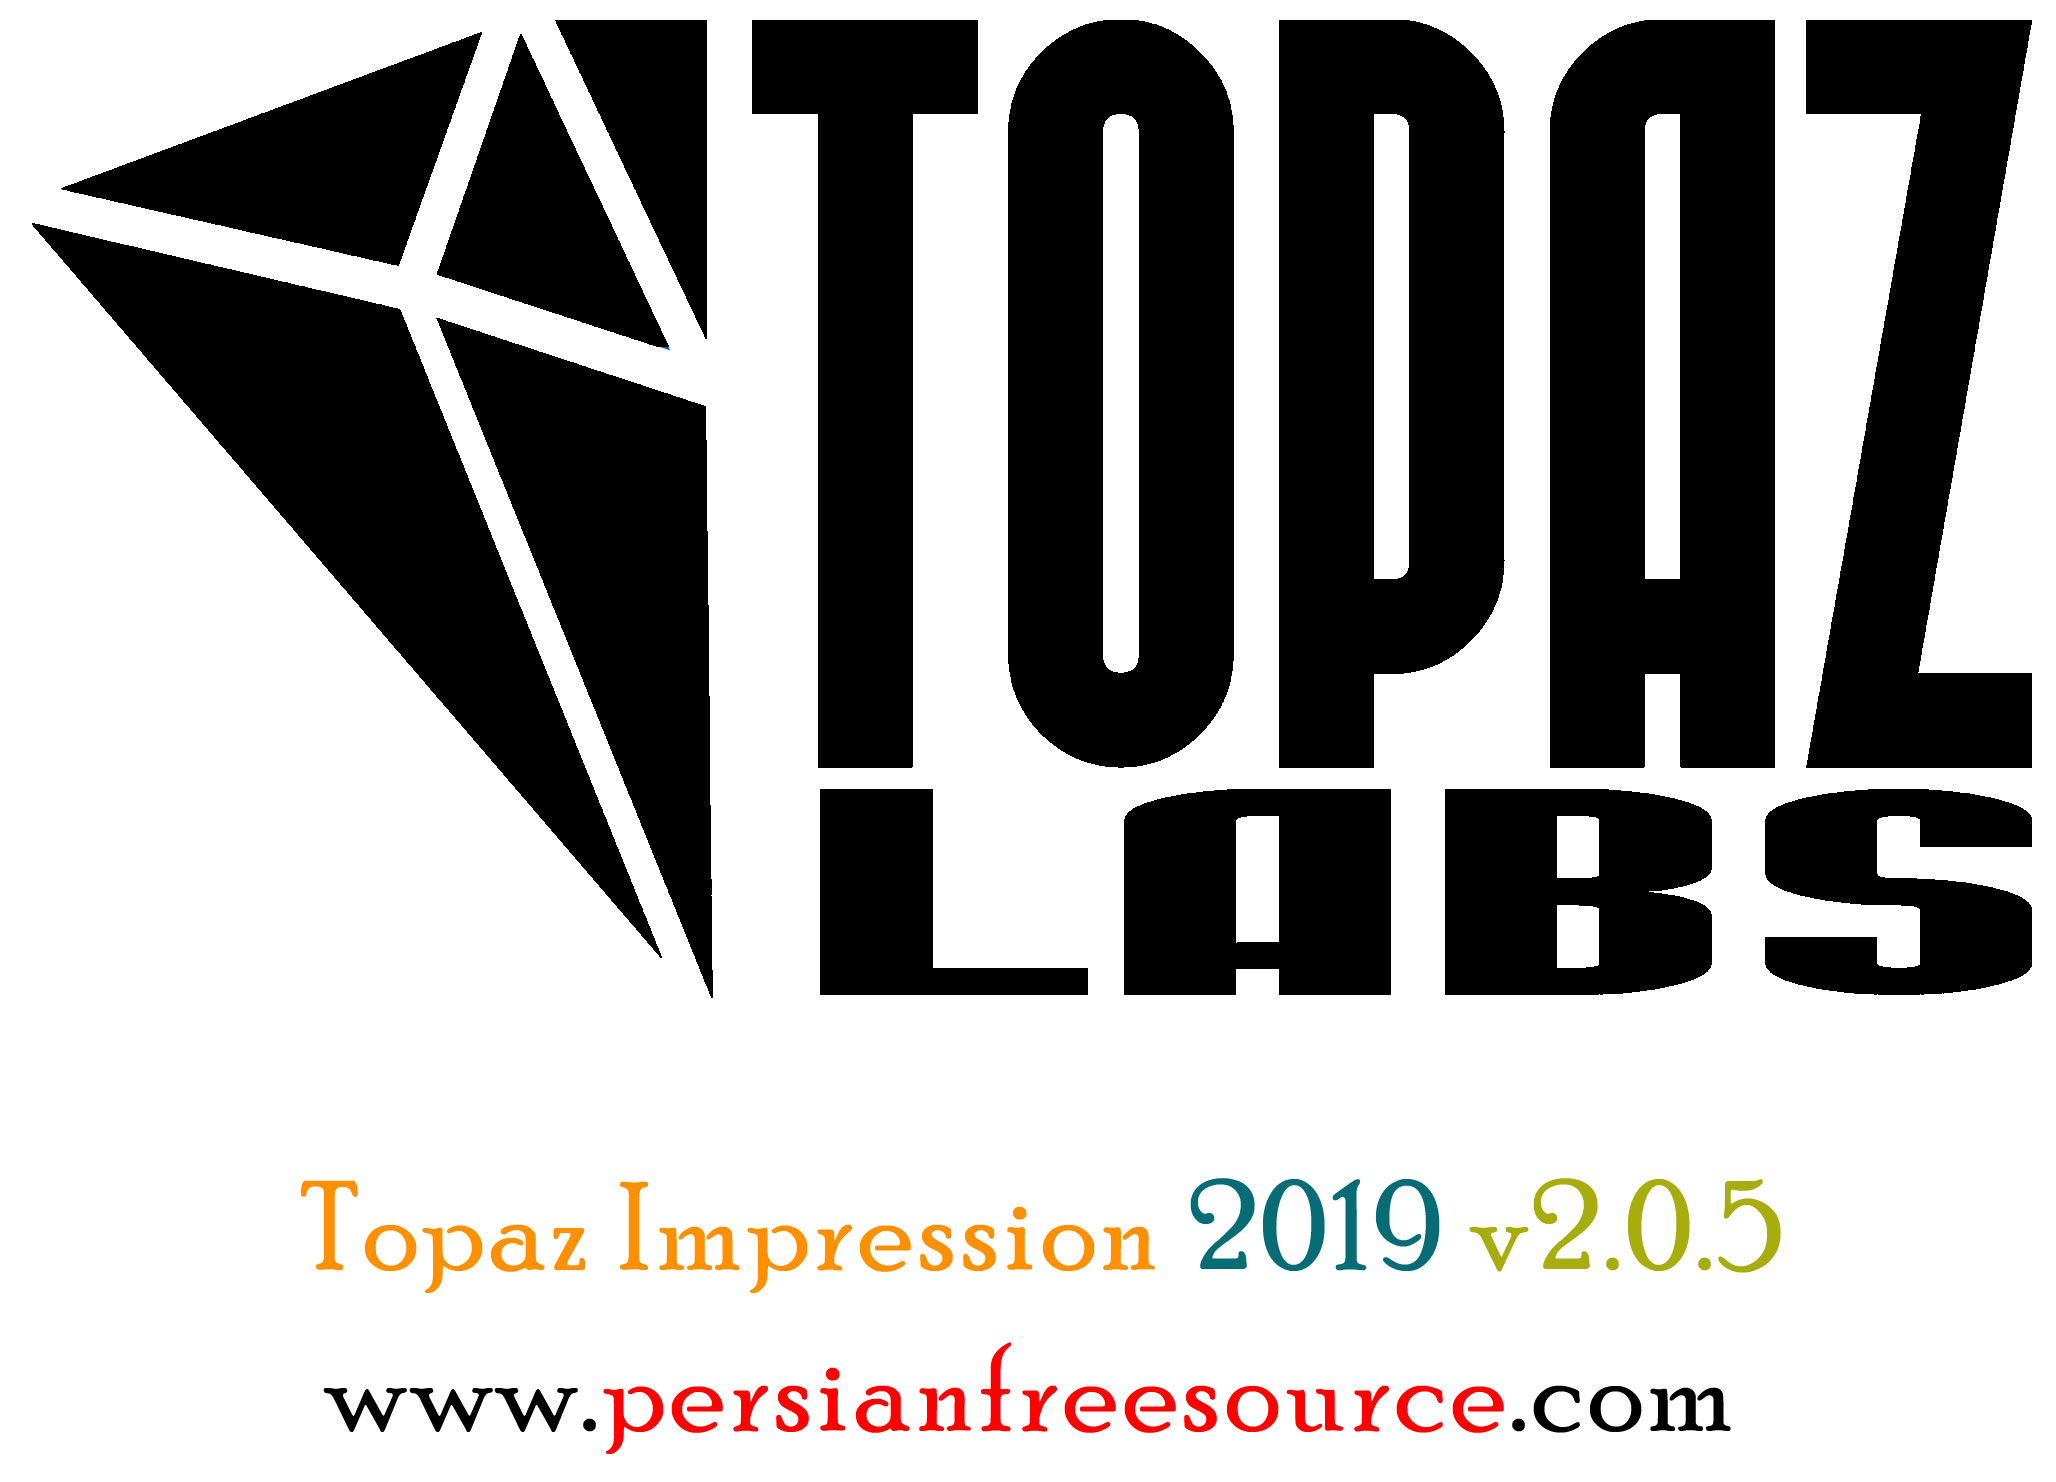 دانلود نرم افزار تبدیل عکس به نقاشی Topaz Impression 2019 v2.0.5